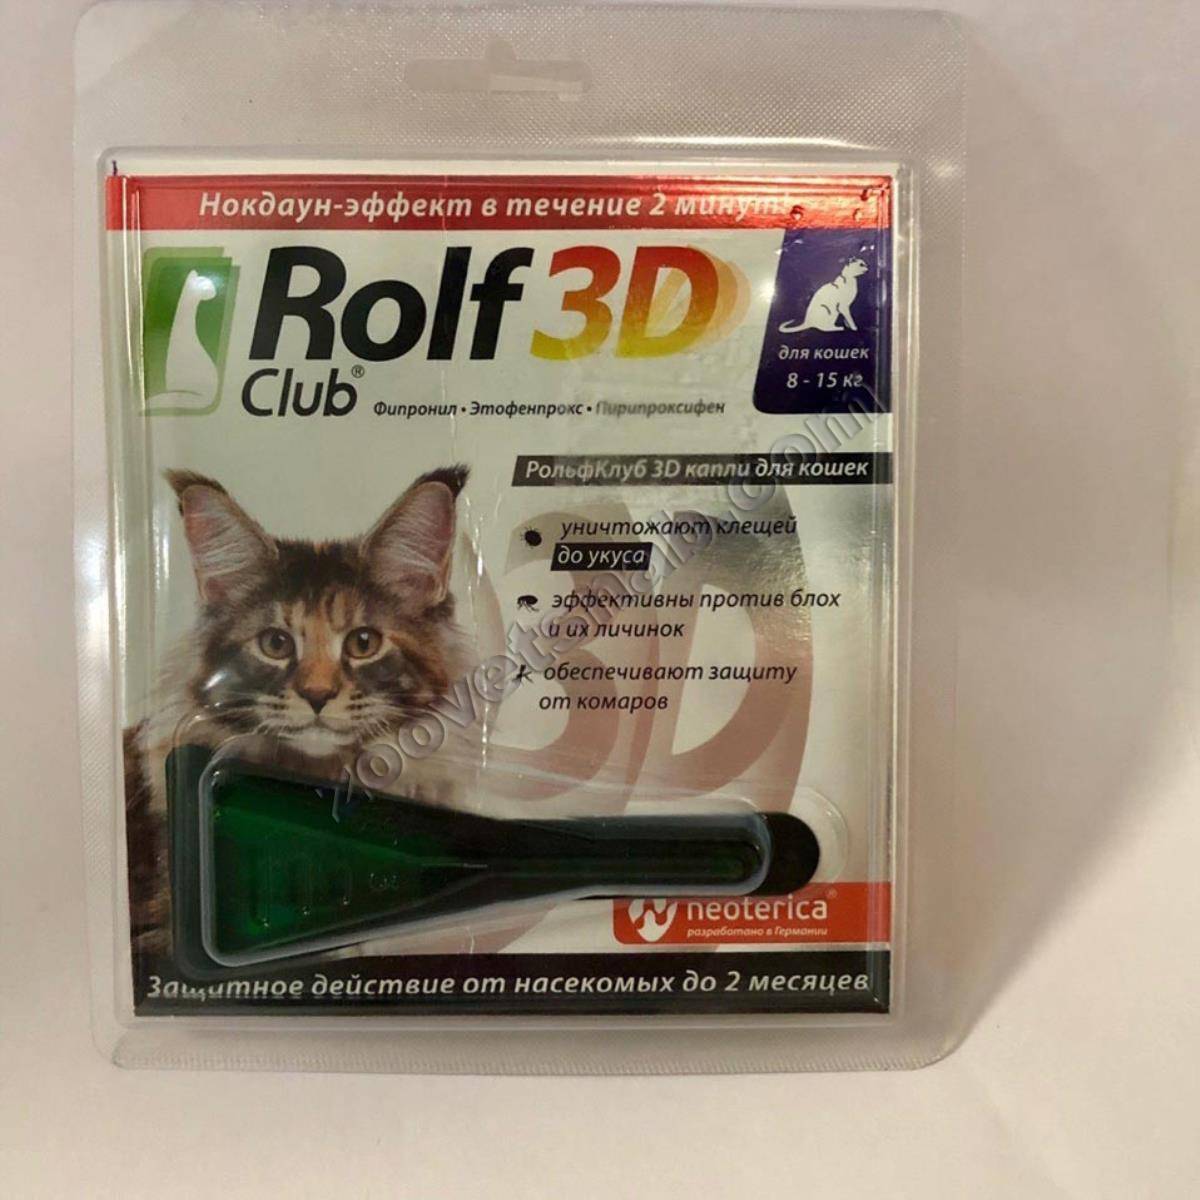 Rolf club 3d - капли для кошек более 4 кг - средства от блох и клещей -средства от паразитов -товары для кошек - каталог